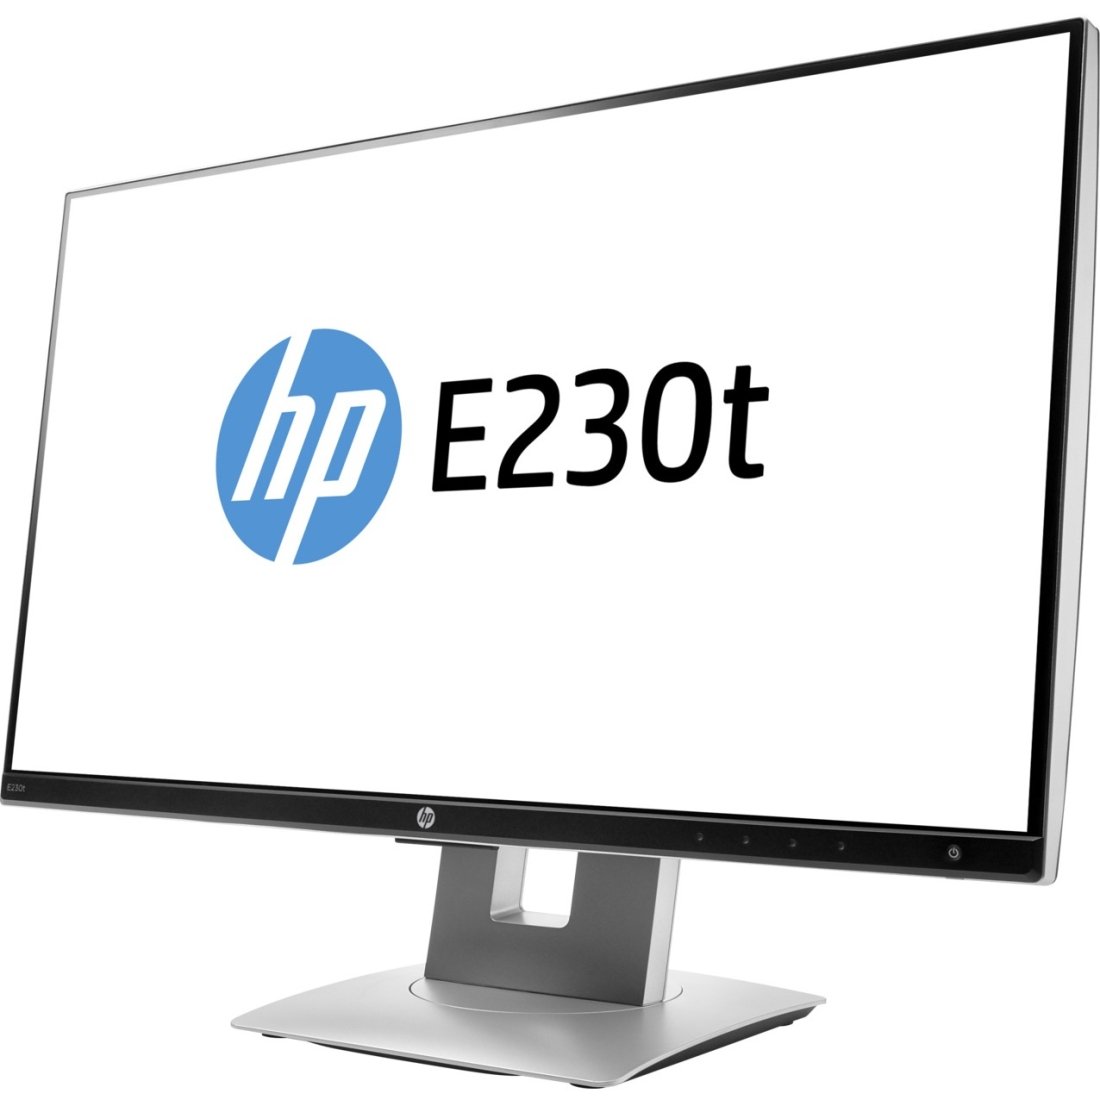 HP Business E230t 23" LED LCD 可触摸显示器